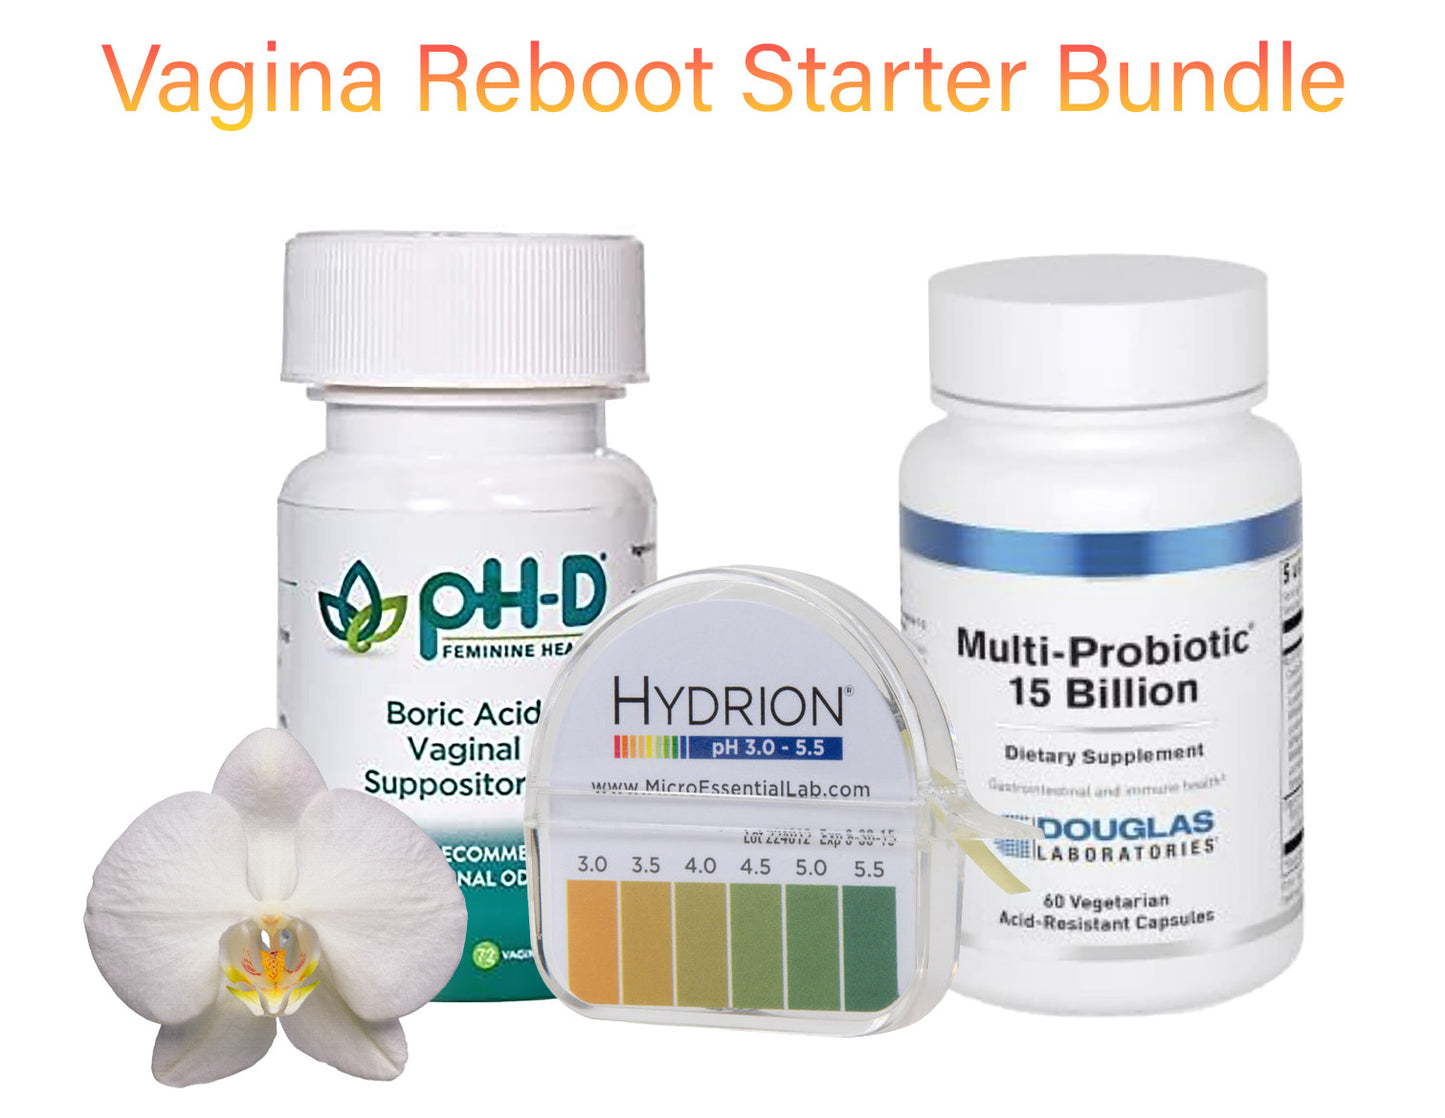 Vagina ReFresh Reboot Starter Bundle Supplies